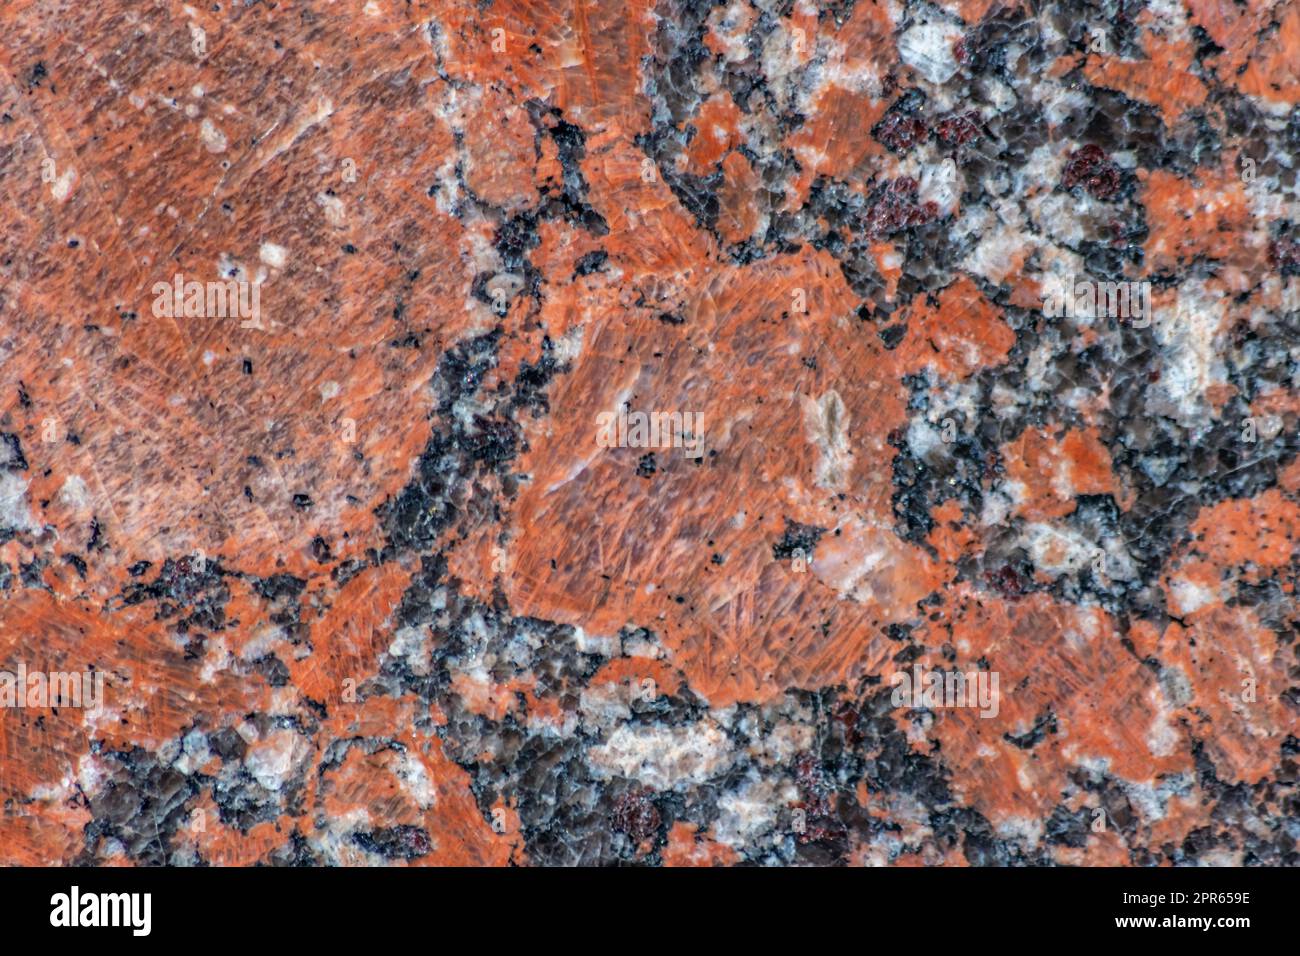 Eleganter roter Marmor und schwarze Marmorstruktur mit elegantem Fußboden mit Marmorfliesen und solidem Gesteinsmaterial als wunderschönes Innenarchitektur- und Fassadendesign-Element mit natürlichen mineralischen Texturen Stockfoto